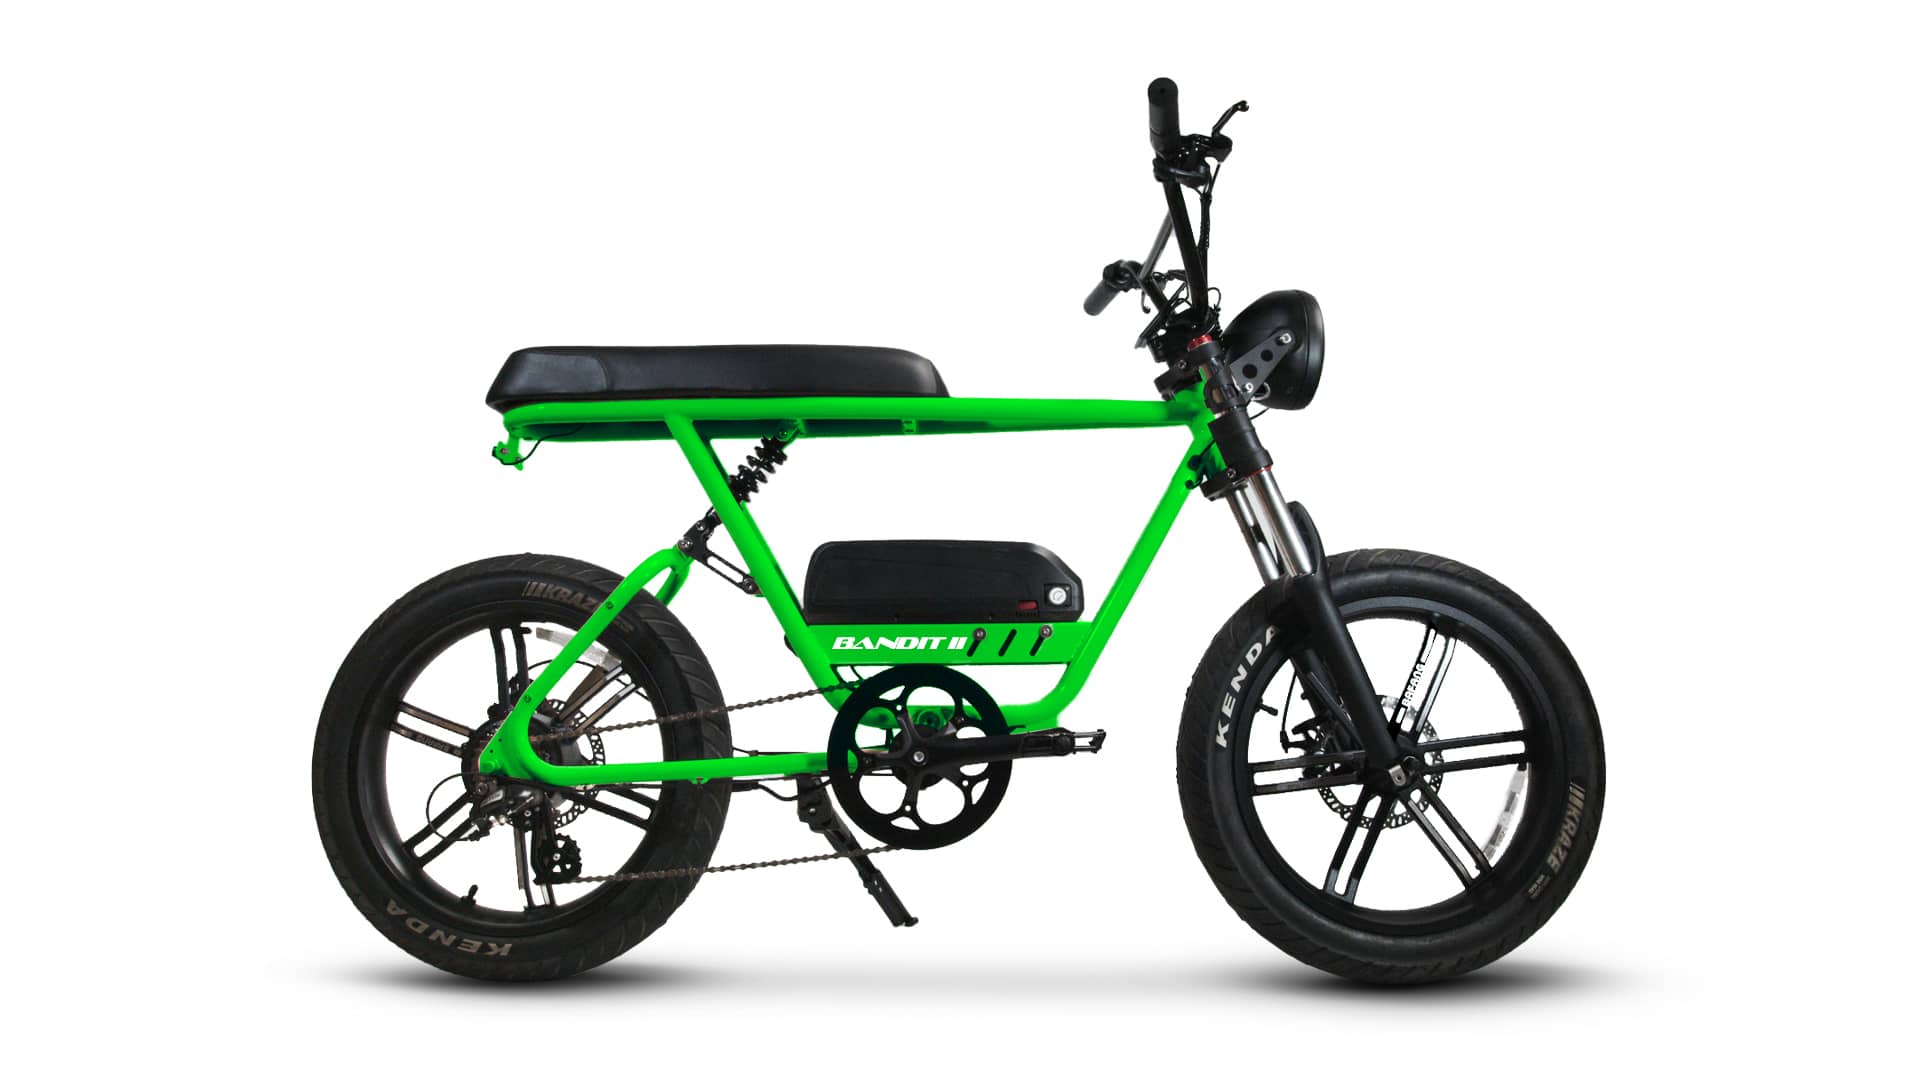 Bandit II - Fat Tire Scrambler Ebike from FLX Bike Slime Green / 840 WH